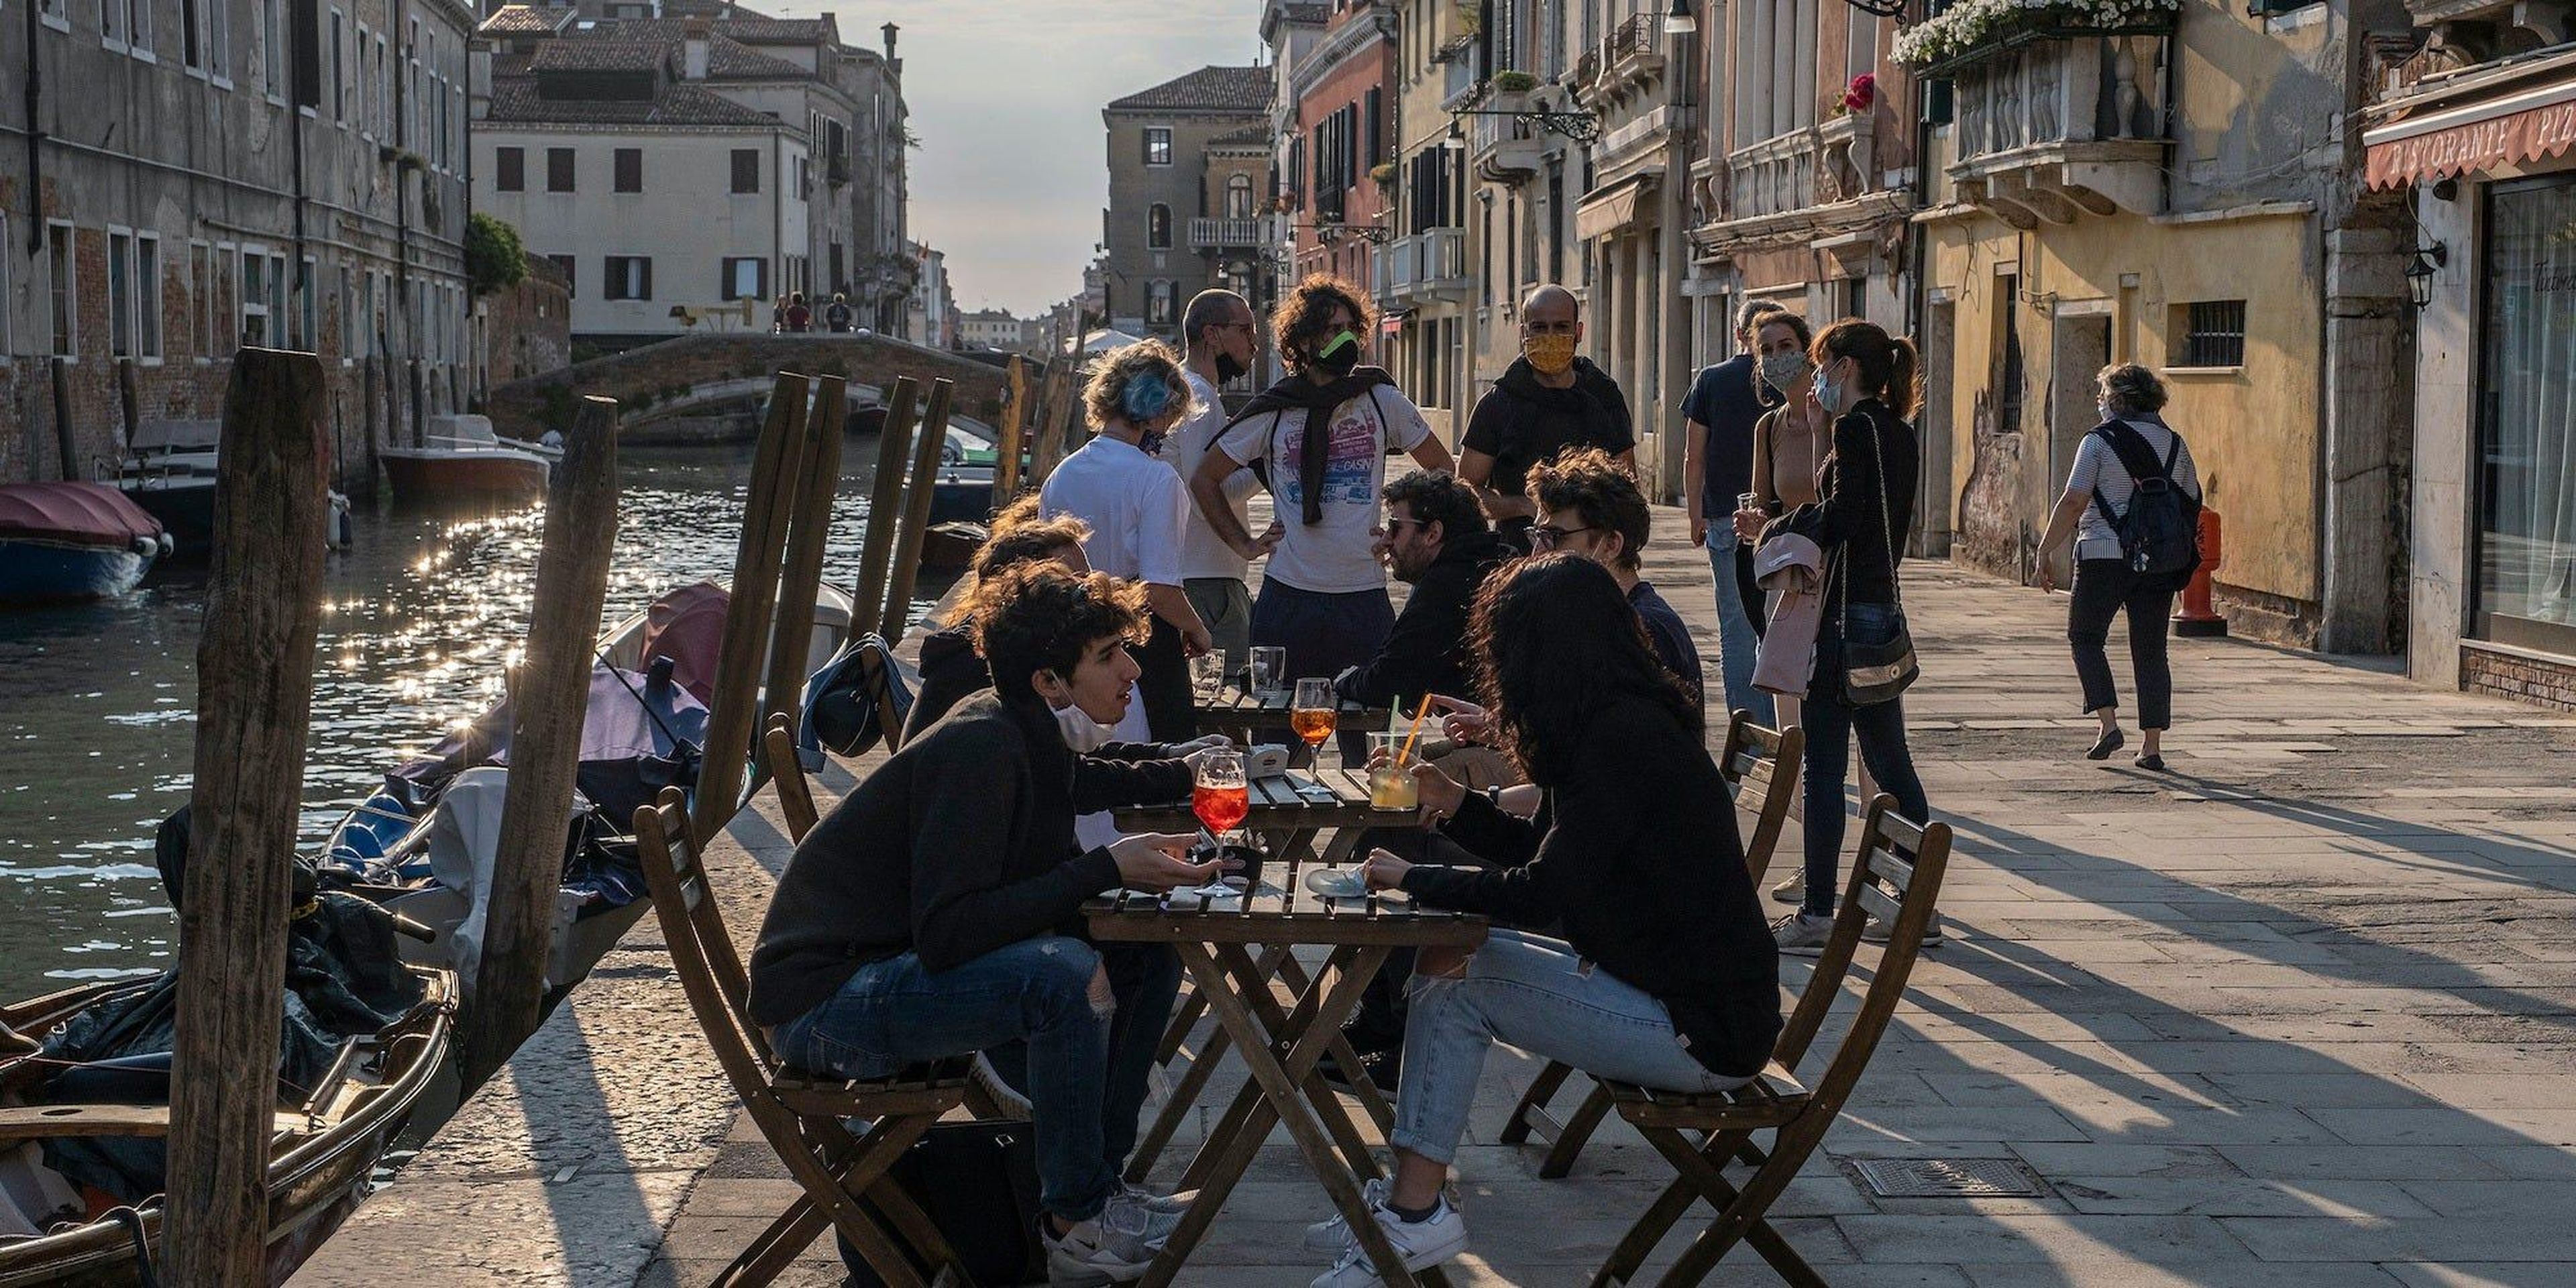 Los venecianos toman el aperitivo en un bar el 20 de mayo de 2020. Restaurantes, bares, cafés, peluquerías y otras tiendas han reabierto, sujetos a medidas de distanciamiento social, después de más de dos meses.